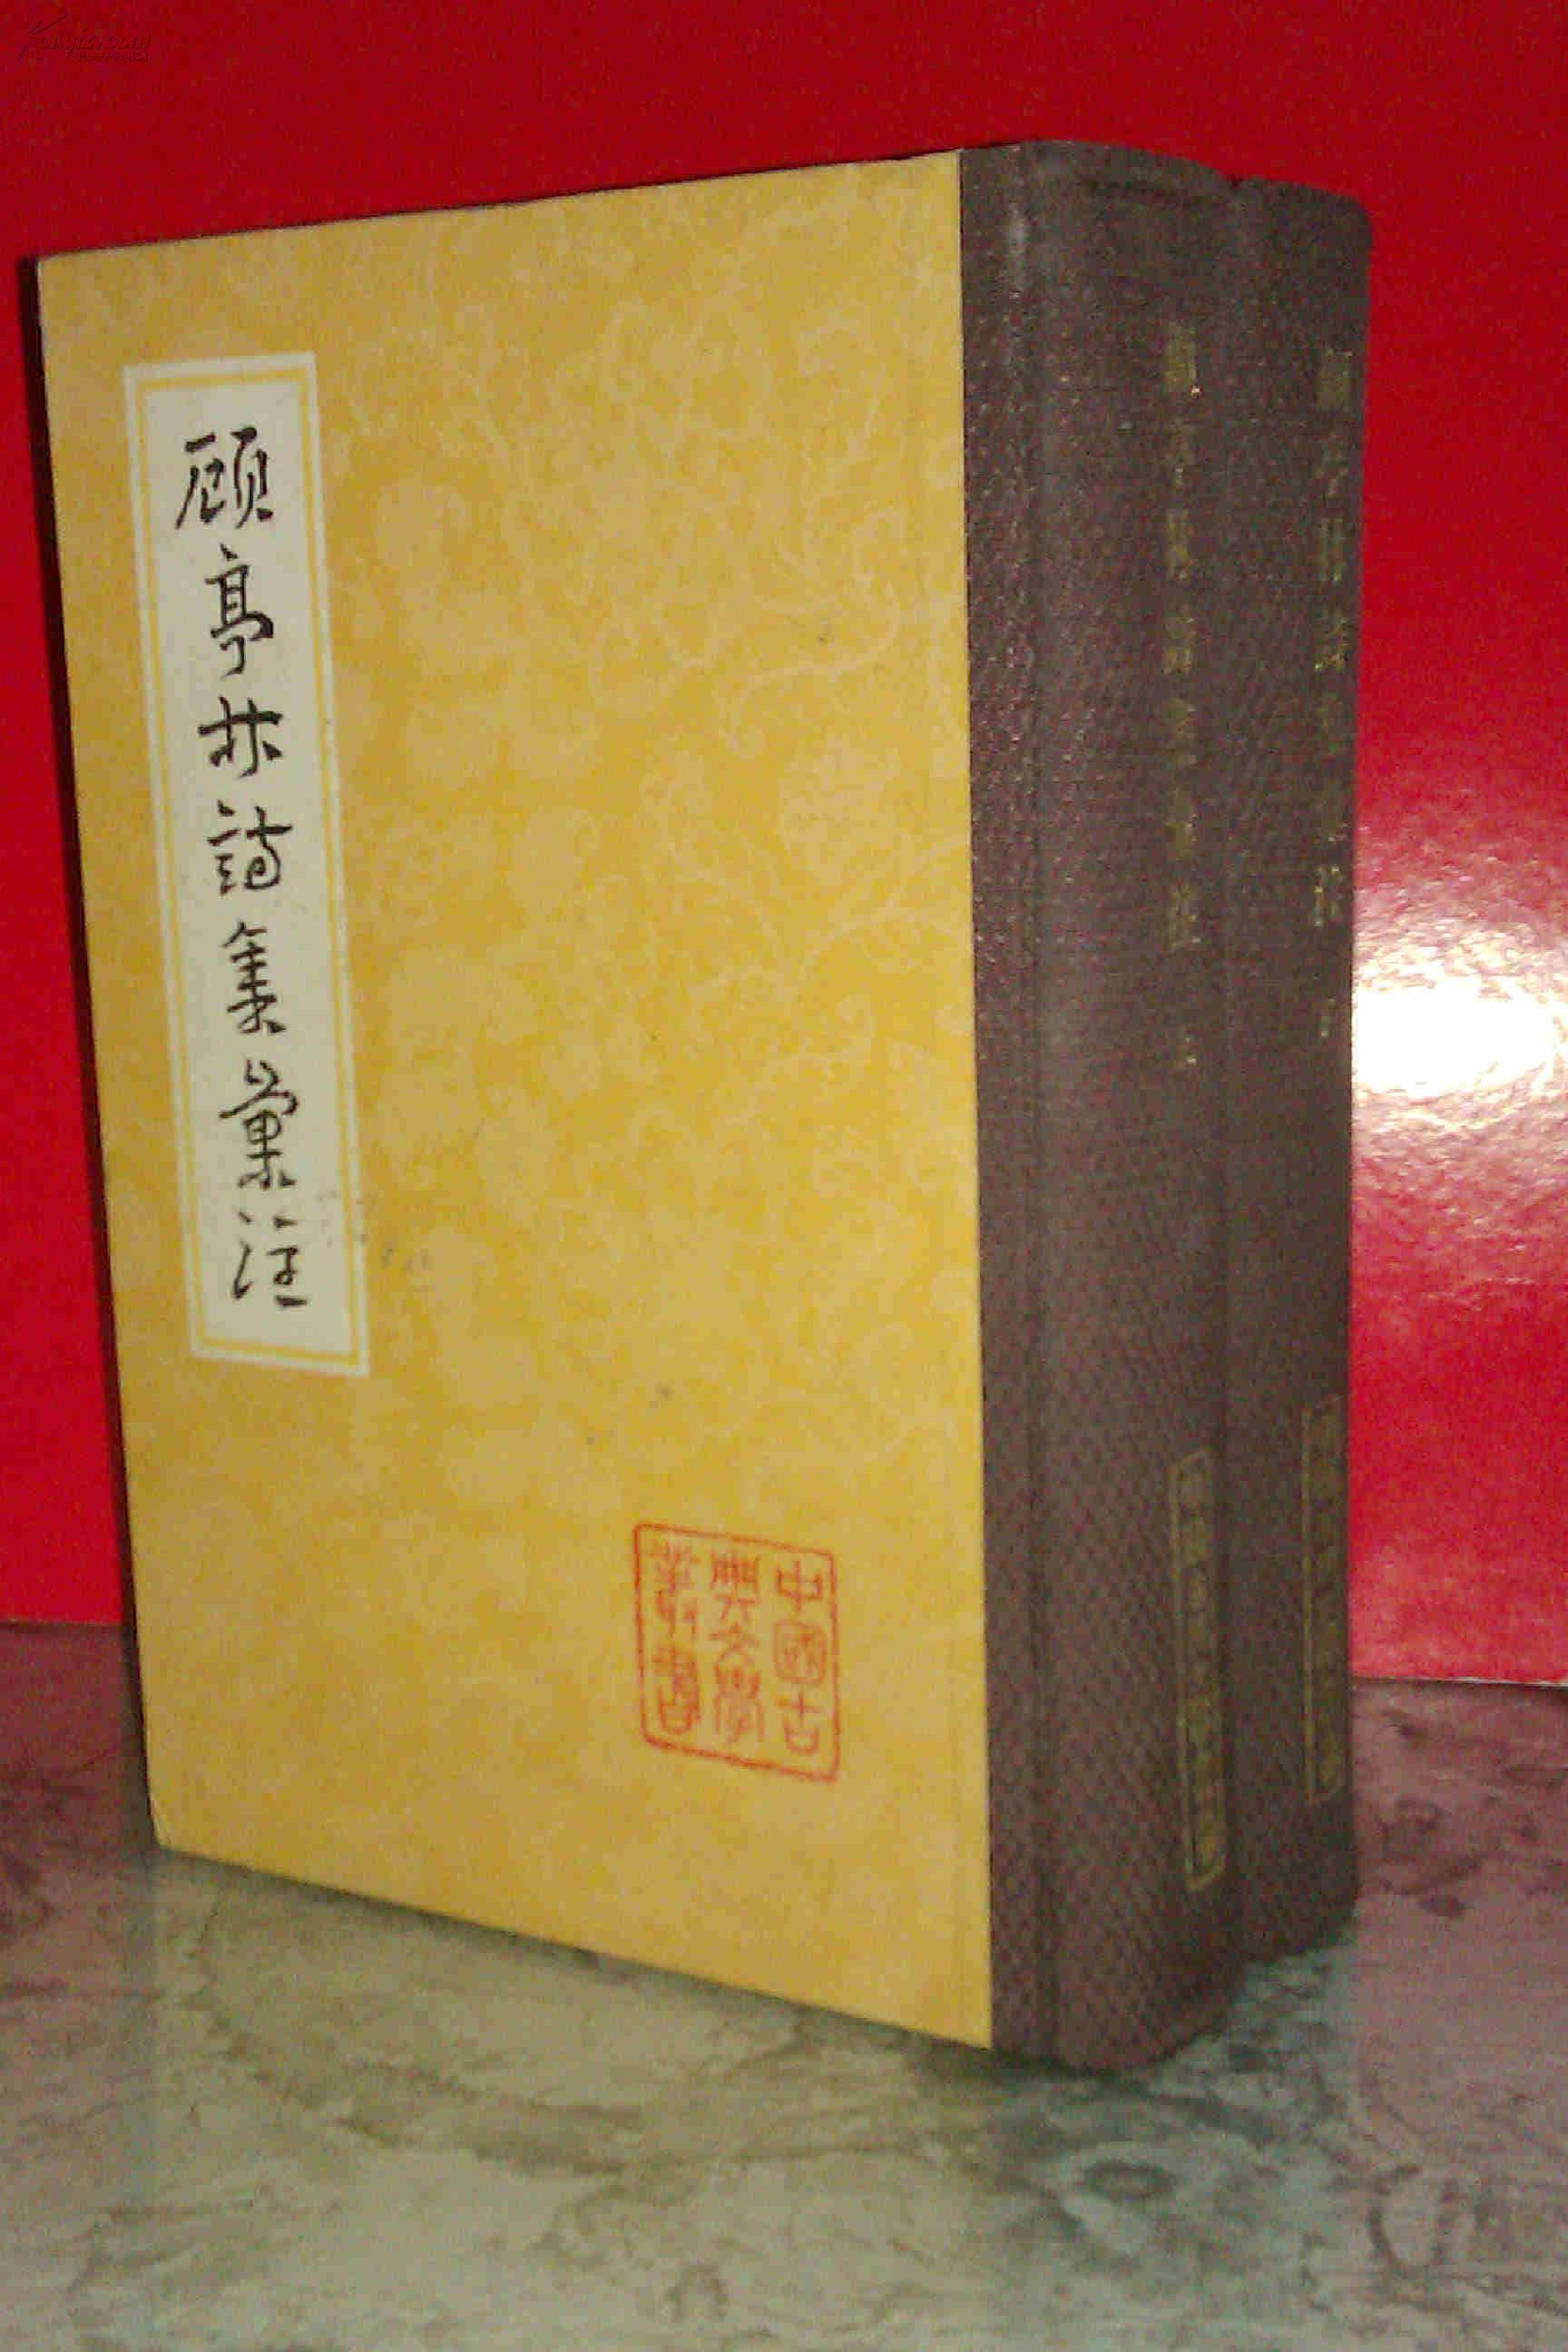 顾亭林诗集汇注 上下两册全  硬精装布背脊  私藏未阅品好  上海古籍出版社1983年一版一印  印数仅2200册